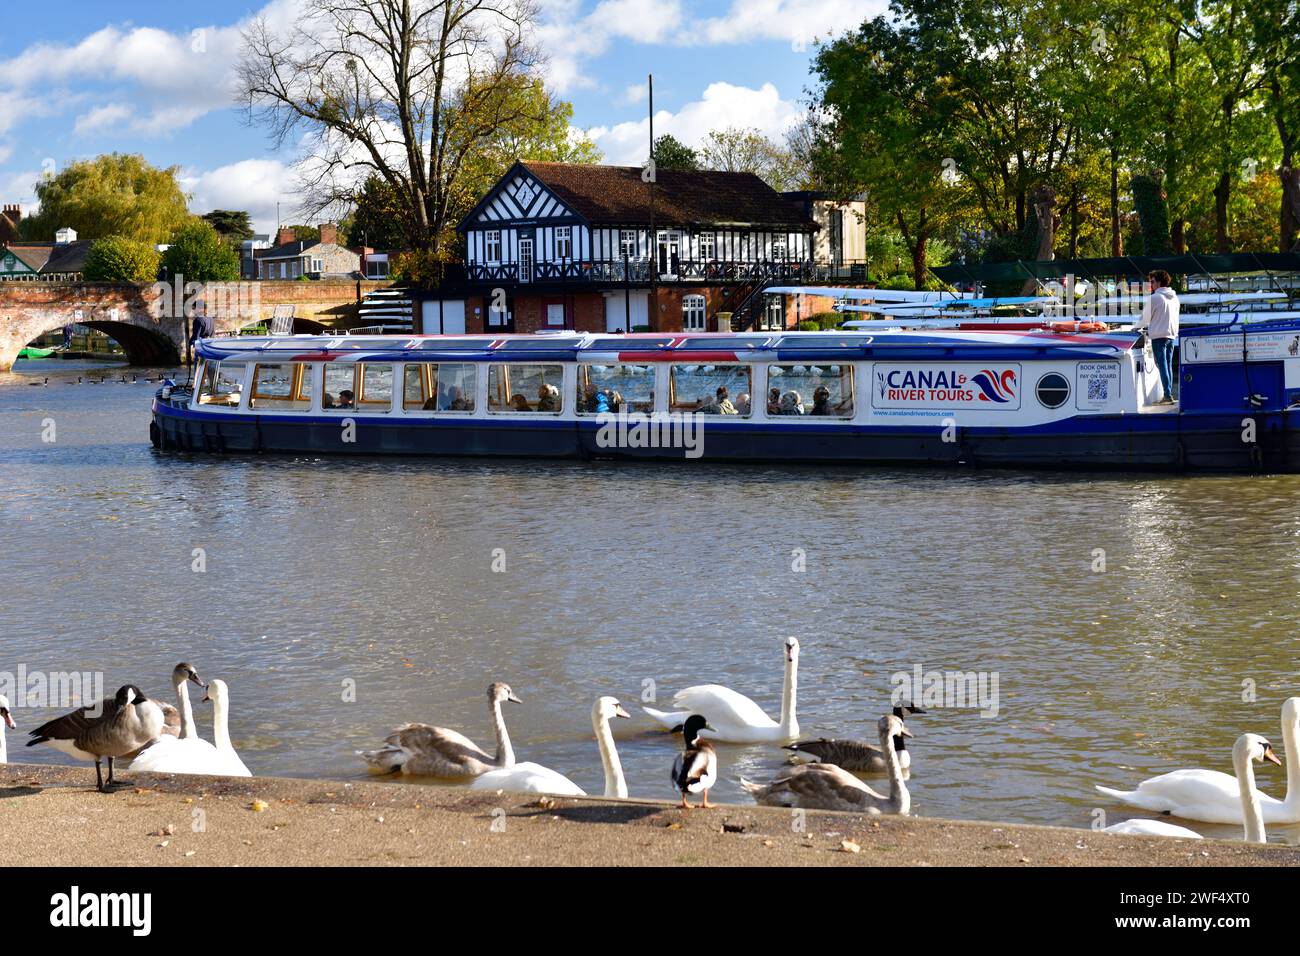 Canal Boat sul fiume Avon a Stratford Upon Avon Warwickshire Inghilterra regno unito Foto Stock